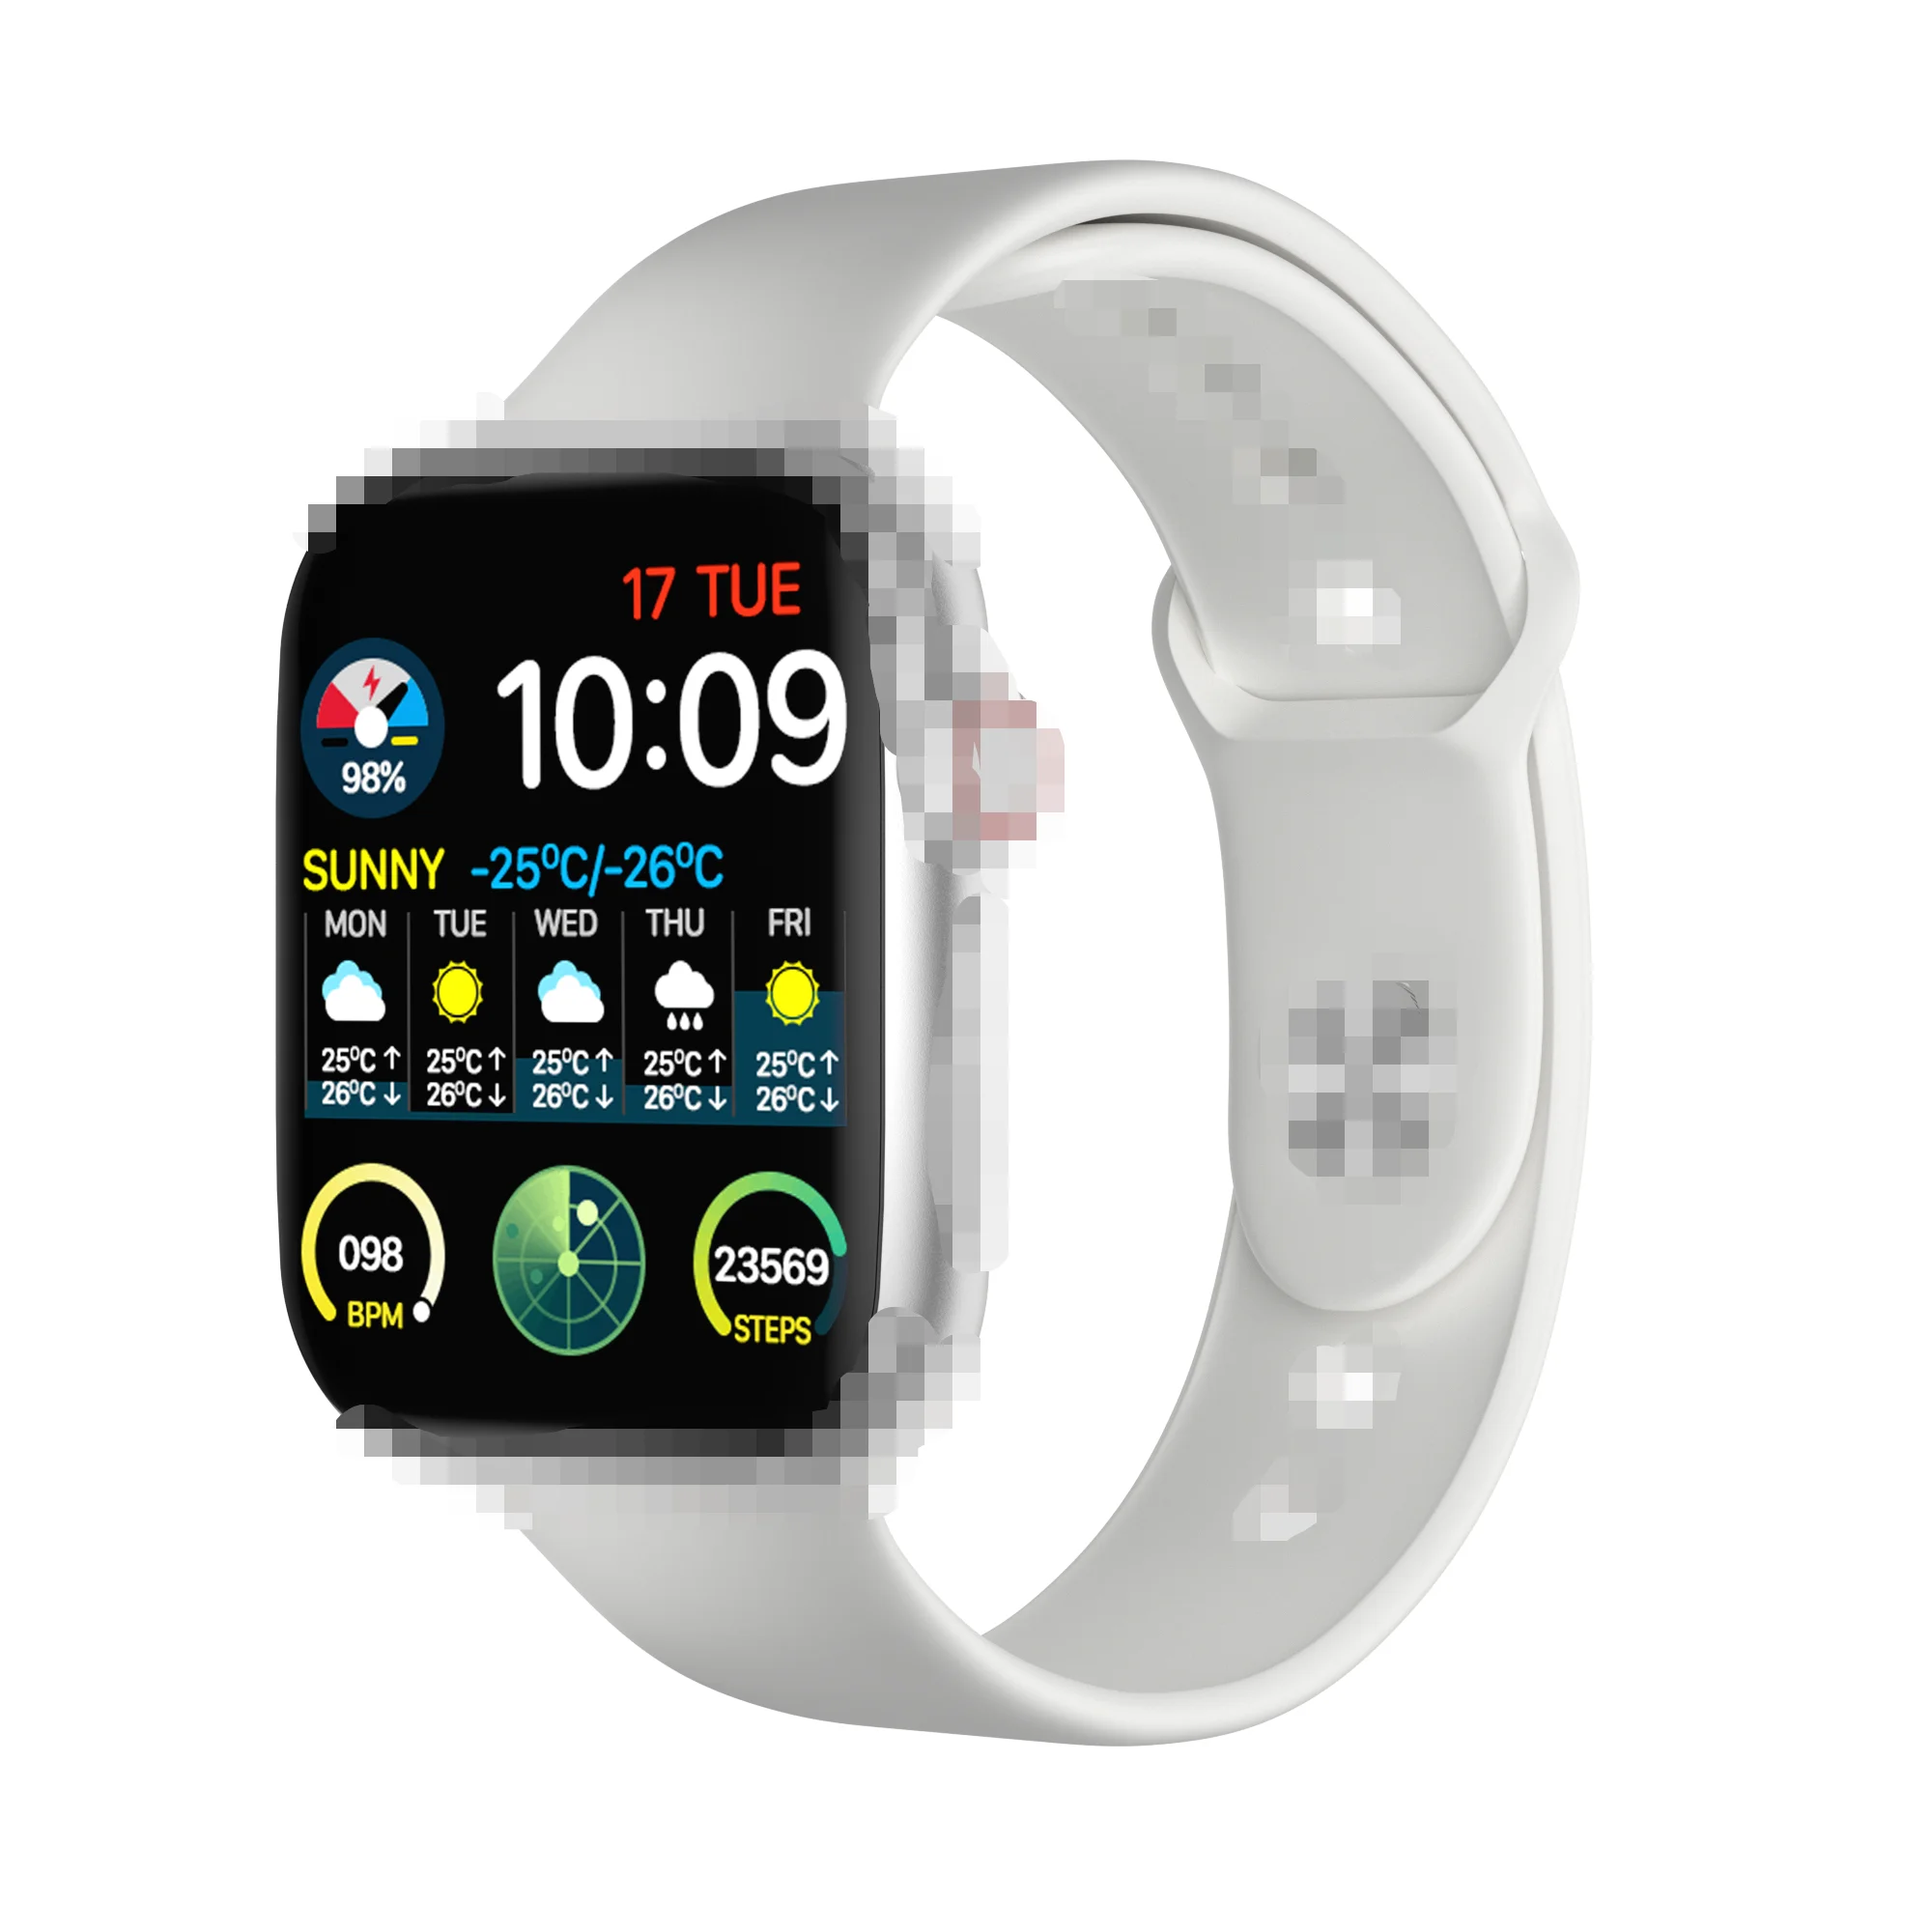 

W34 W26+ W26pro W26 Pro Reloj Intelligent Fk88 Watch Tracker Wristband Fitness Fashion Smartwatch, Black,white,red,blue,pink